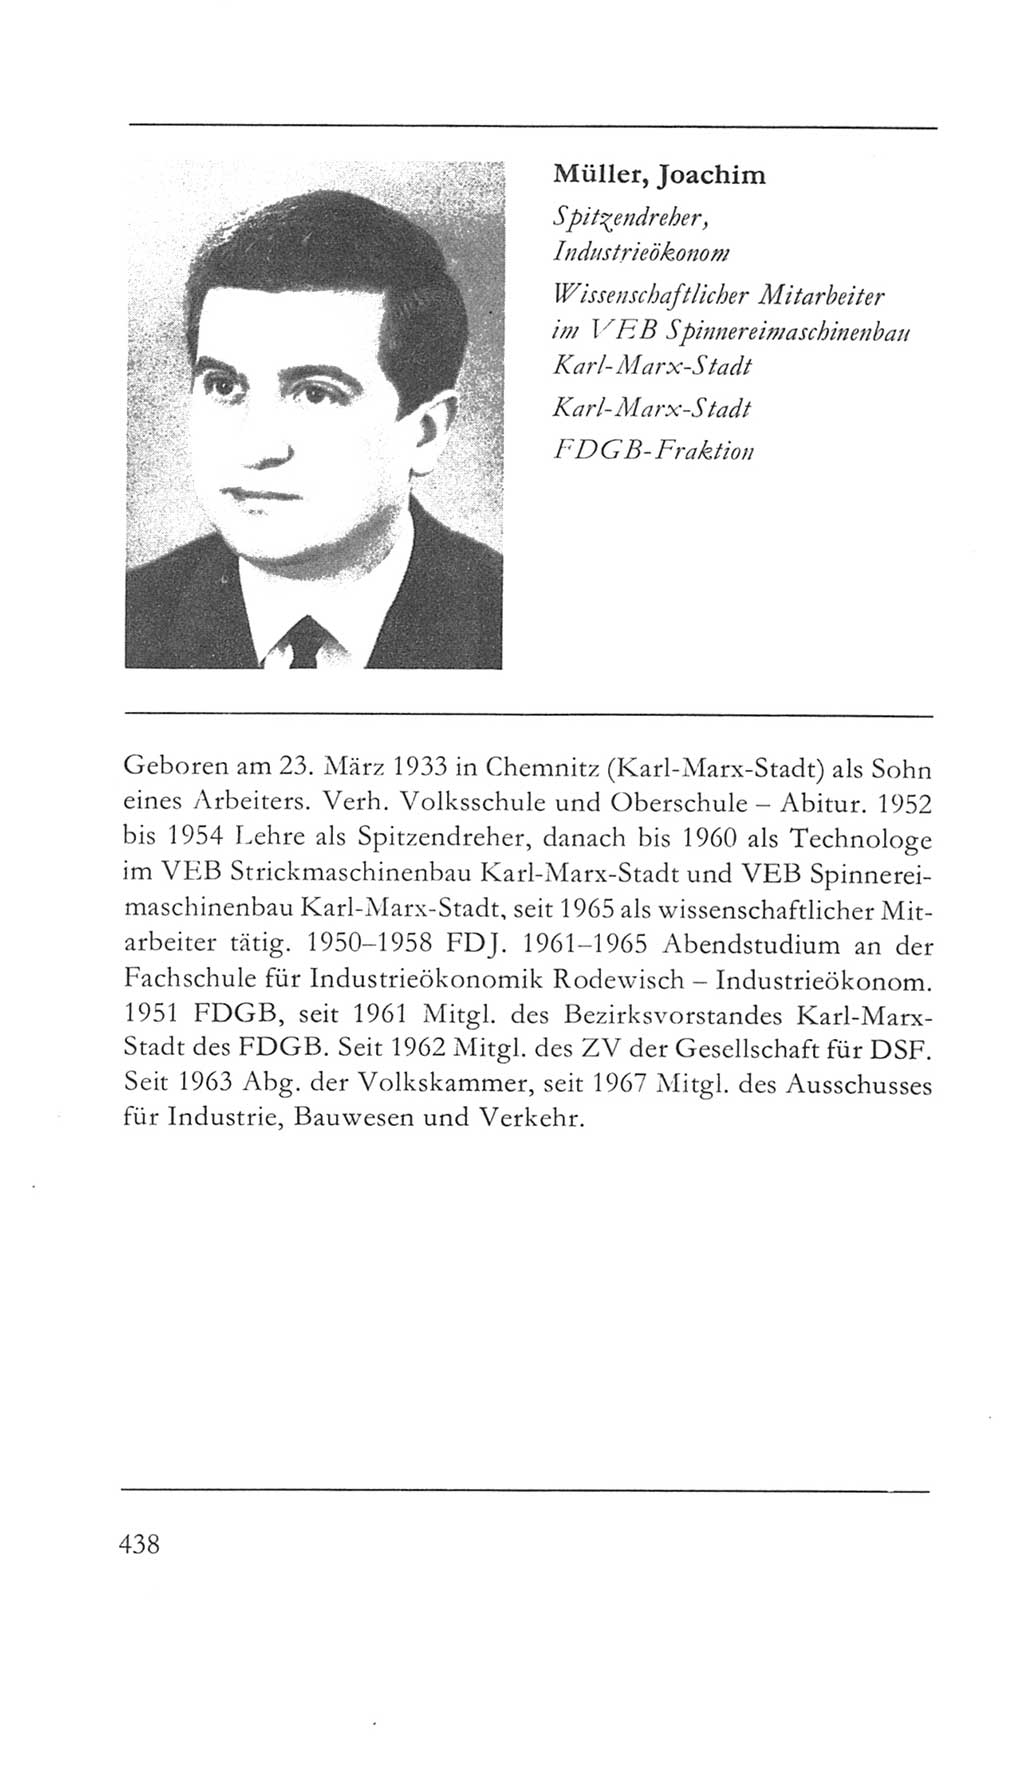 Volkskammer (VK) der Deutschen Demokratischen Republik (DDR) 5. Wahlperiode 1967-1971, Seite 438 (VK. DDR 5. WP. 1967-1971, S. 438)